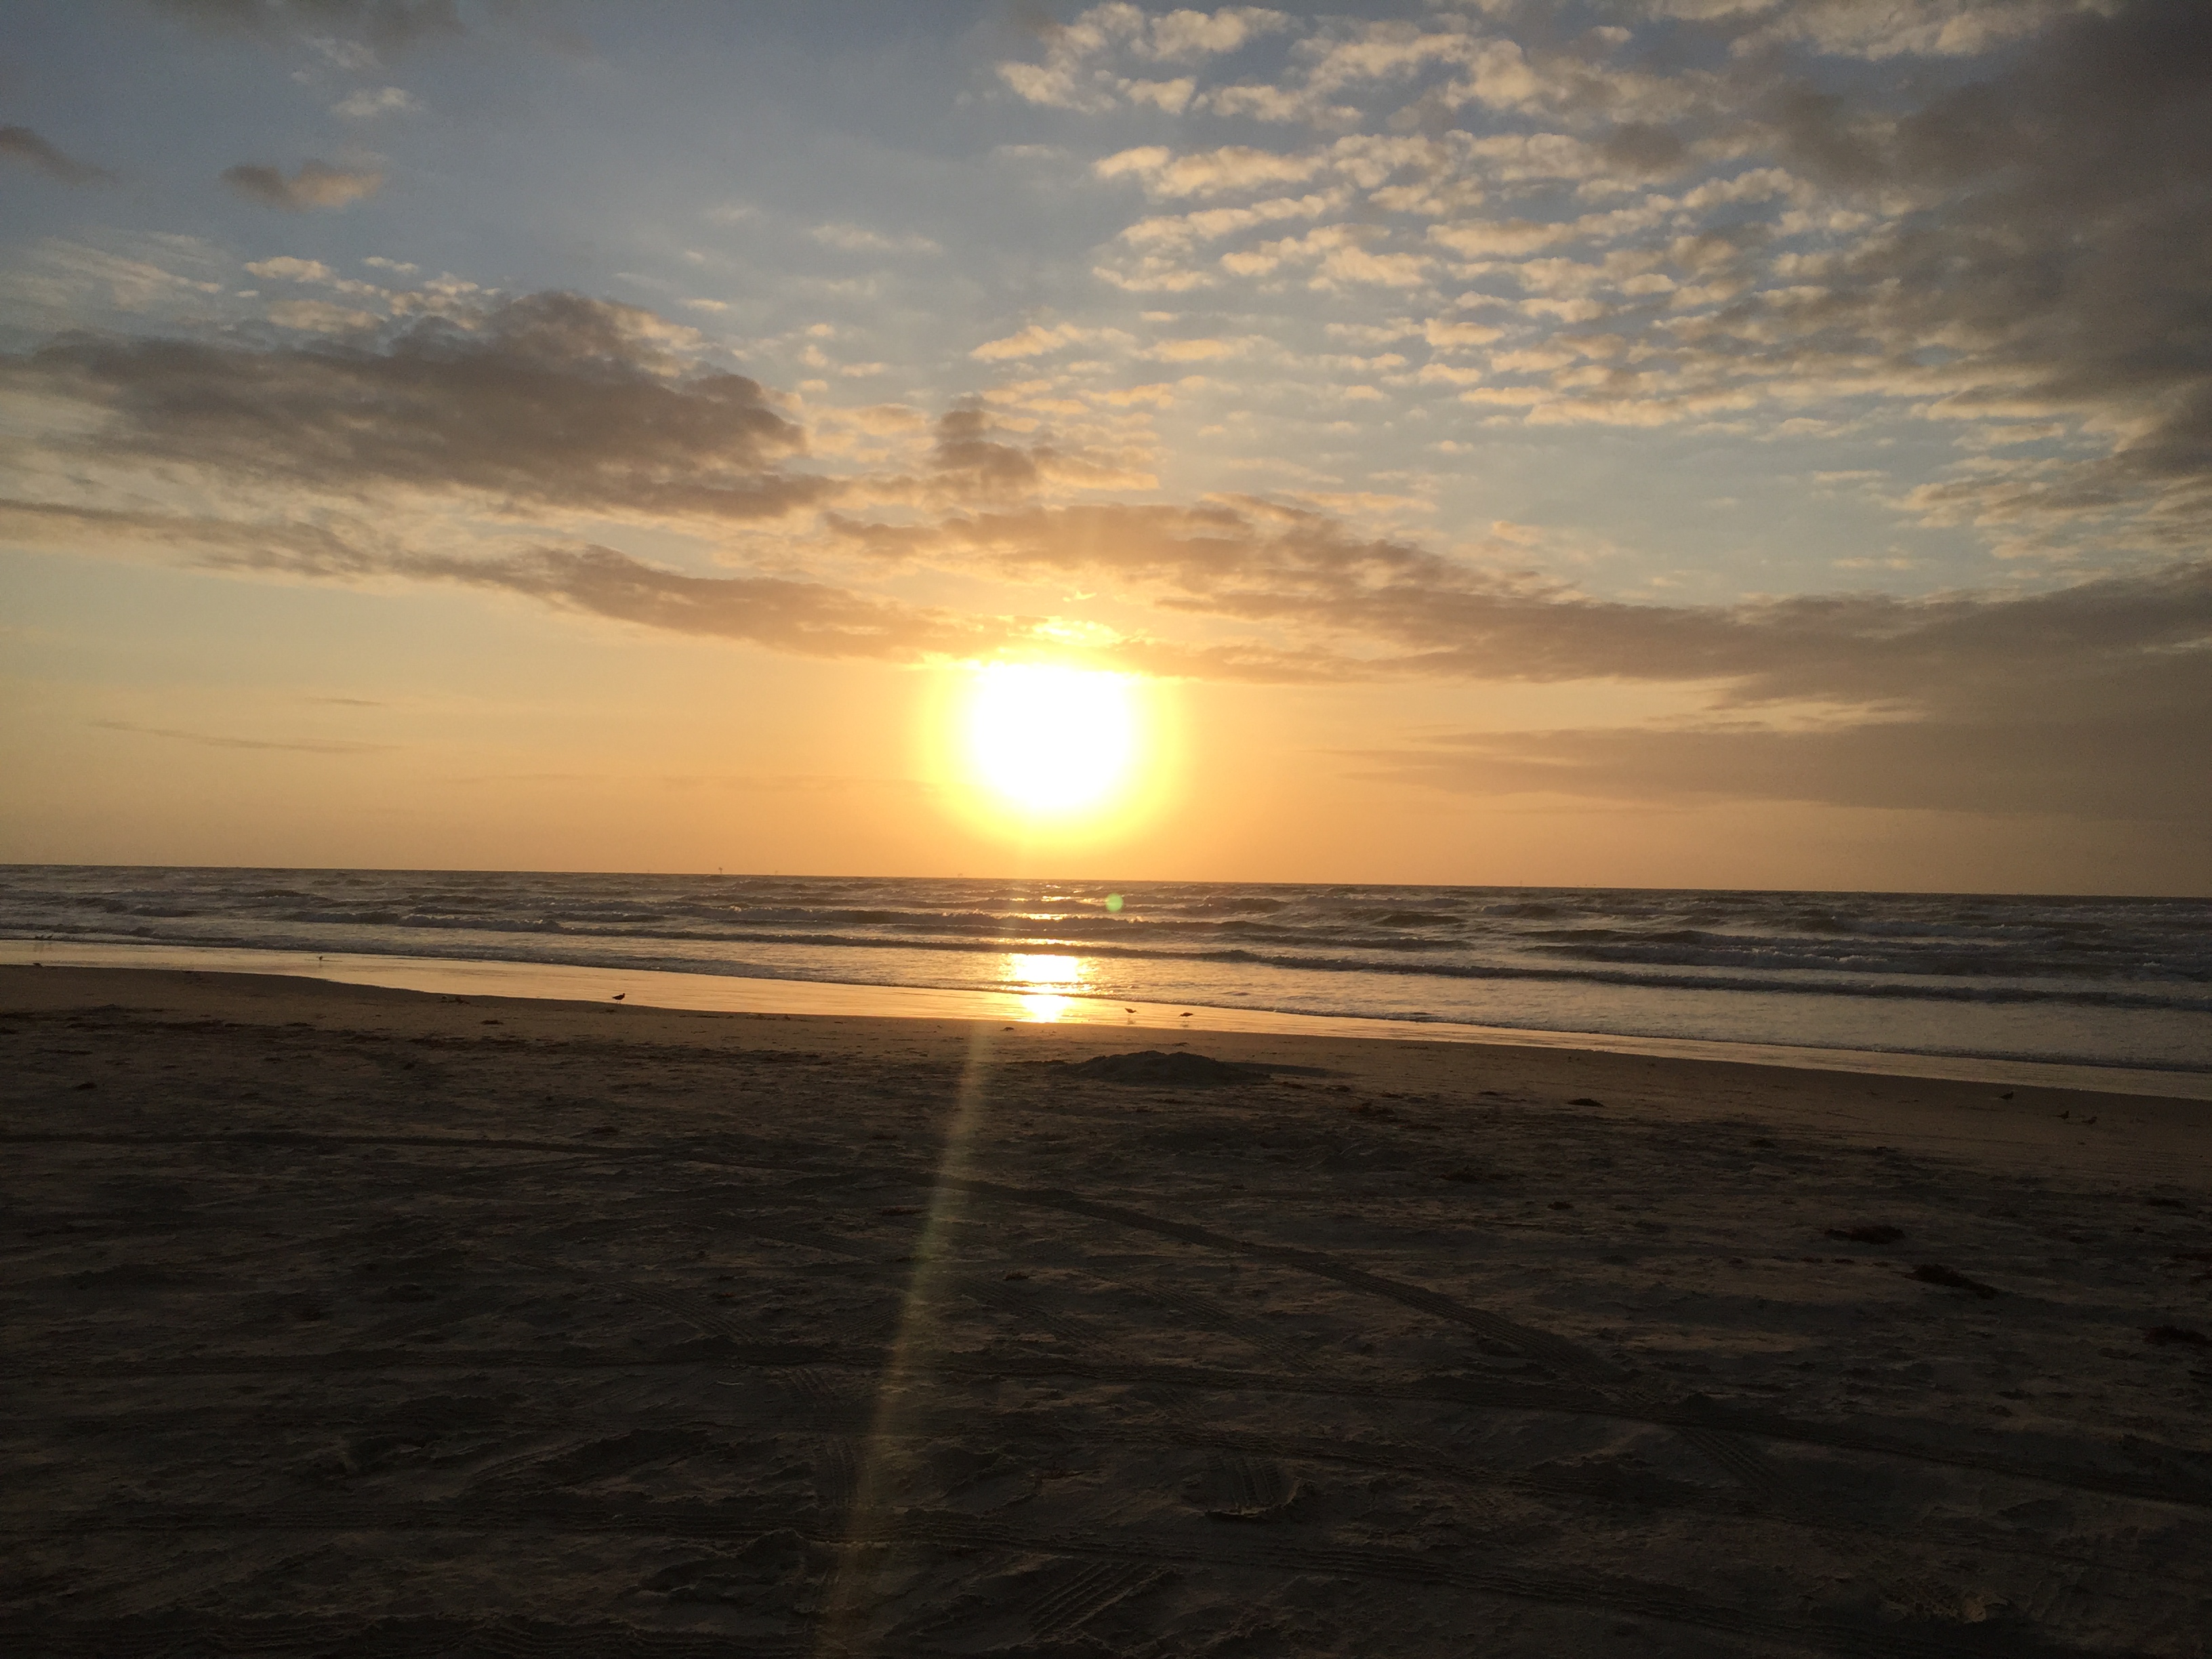 Sunrise at a Texas beach